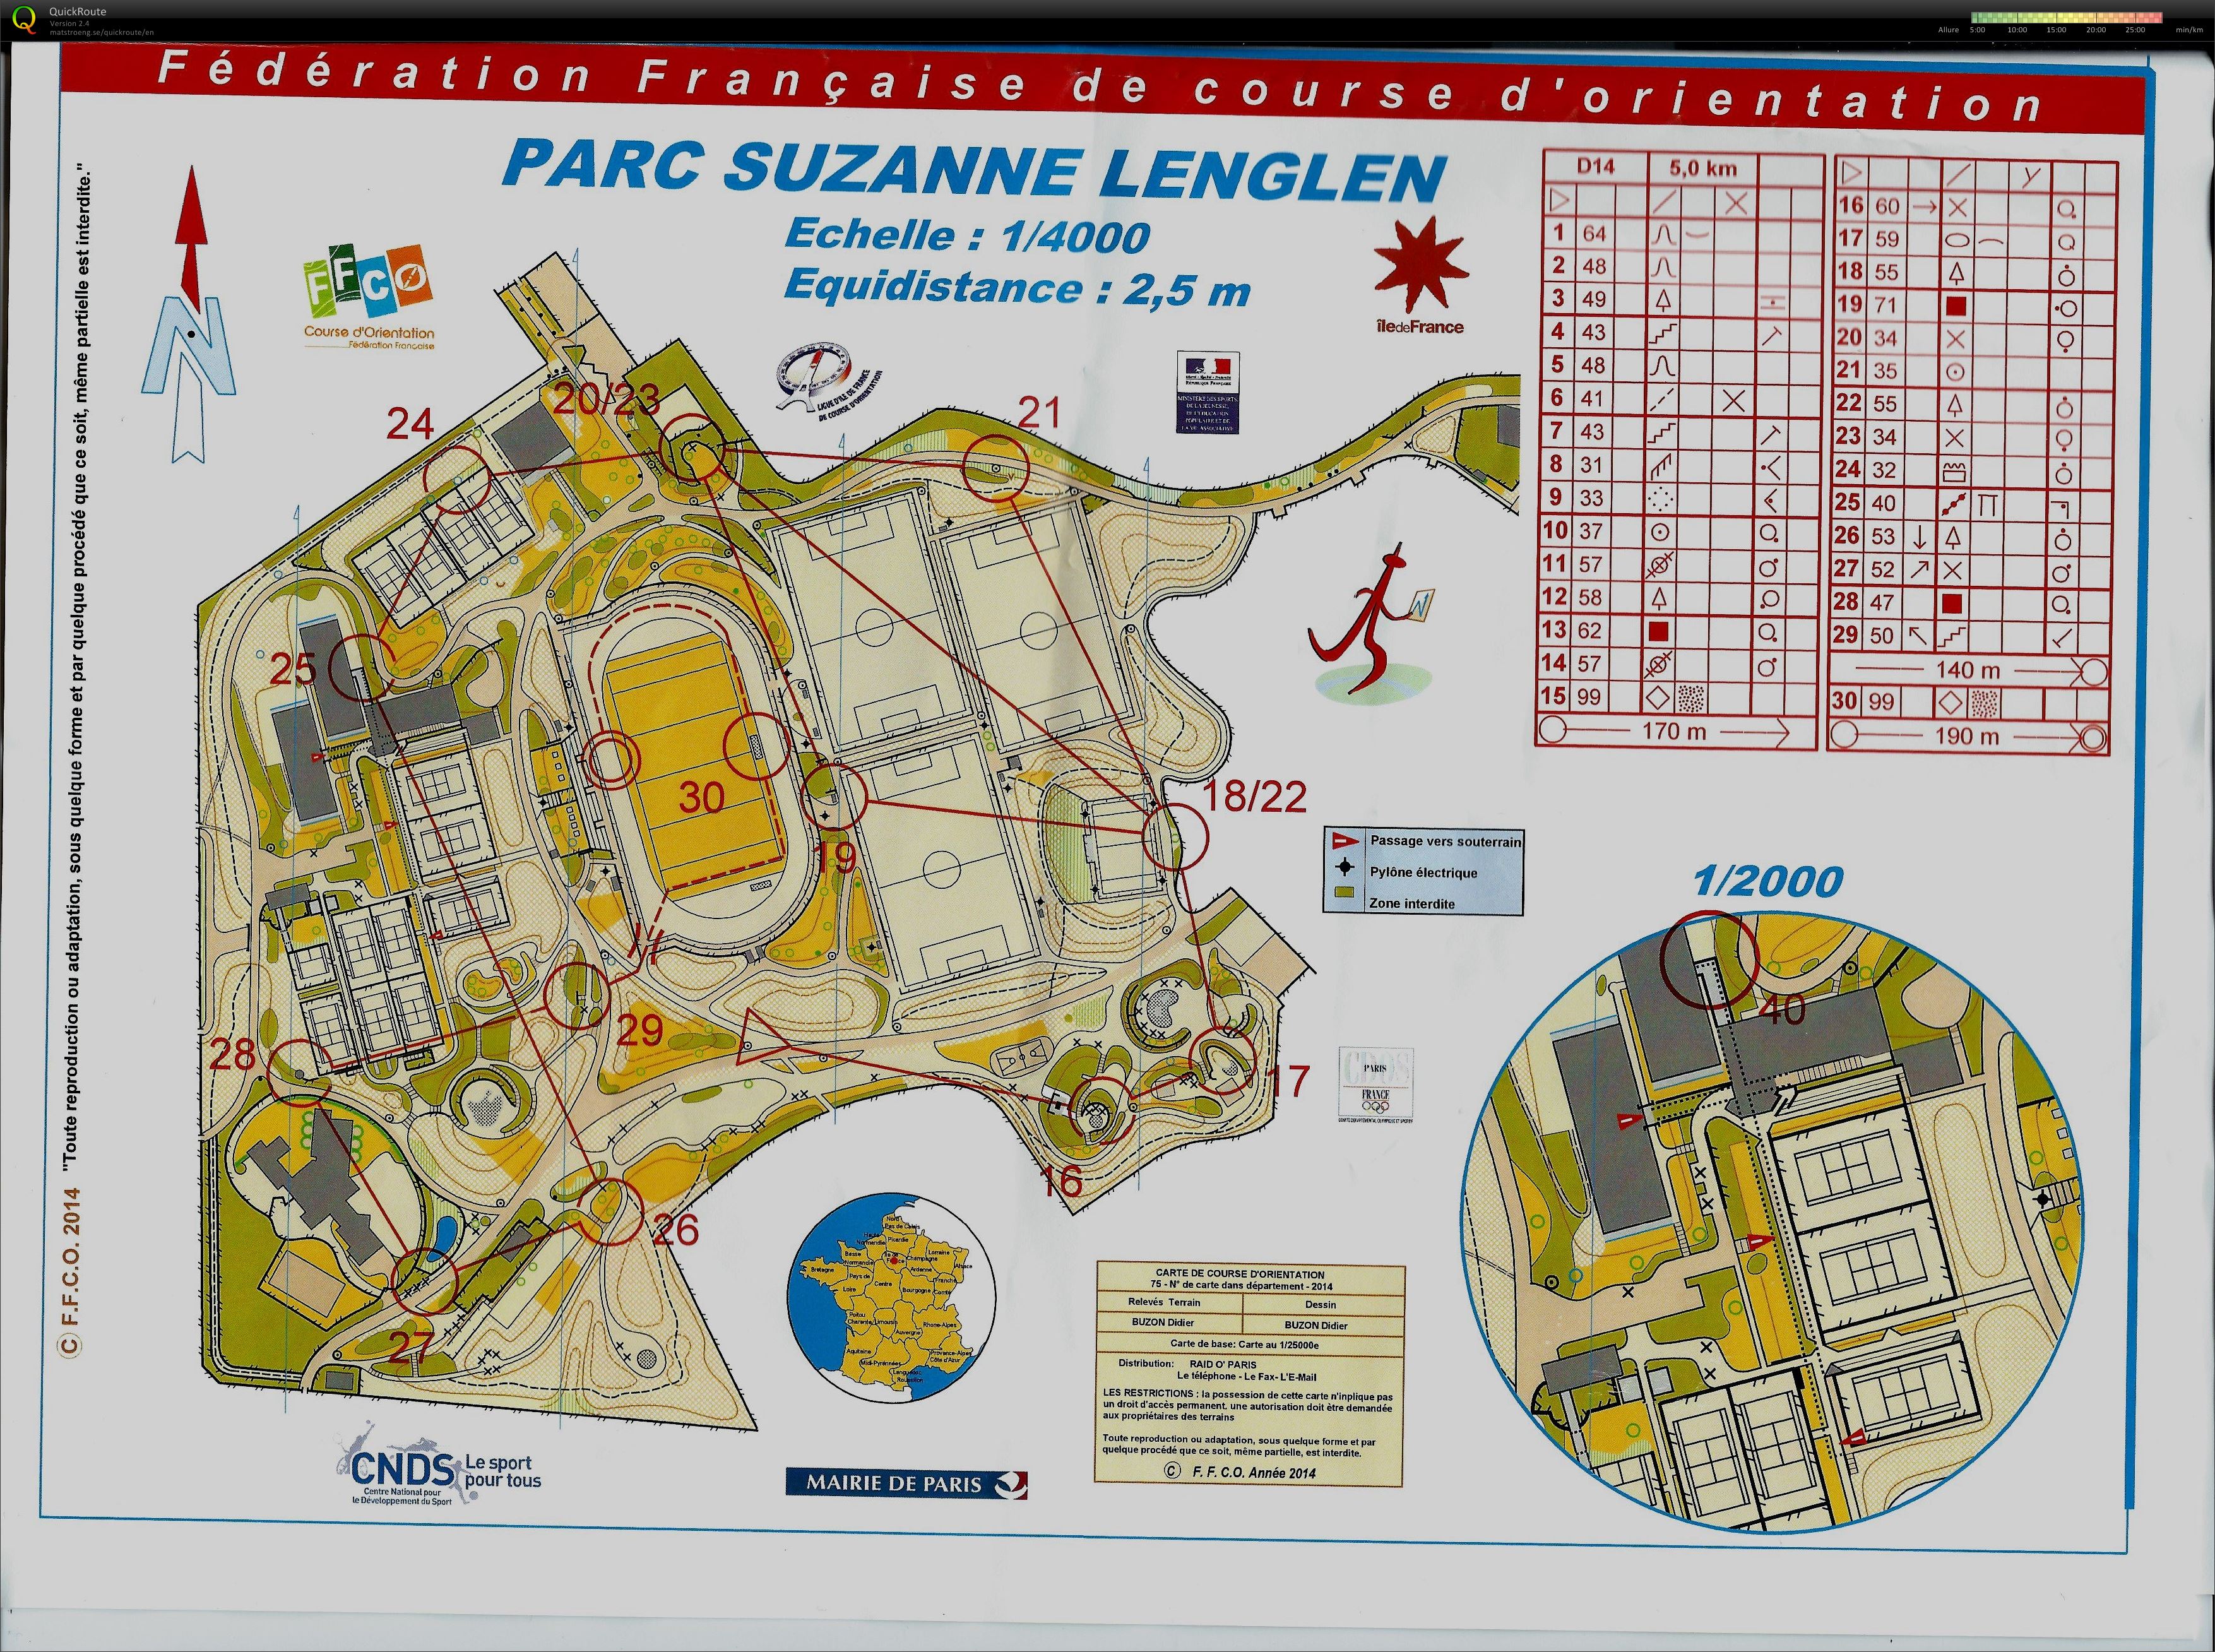 Parc Suzanne Lenglen (2014-09-28)